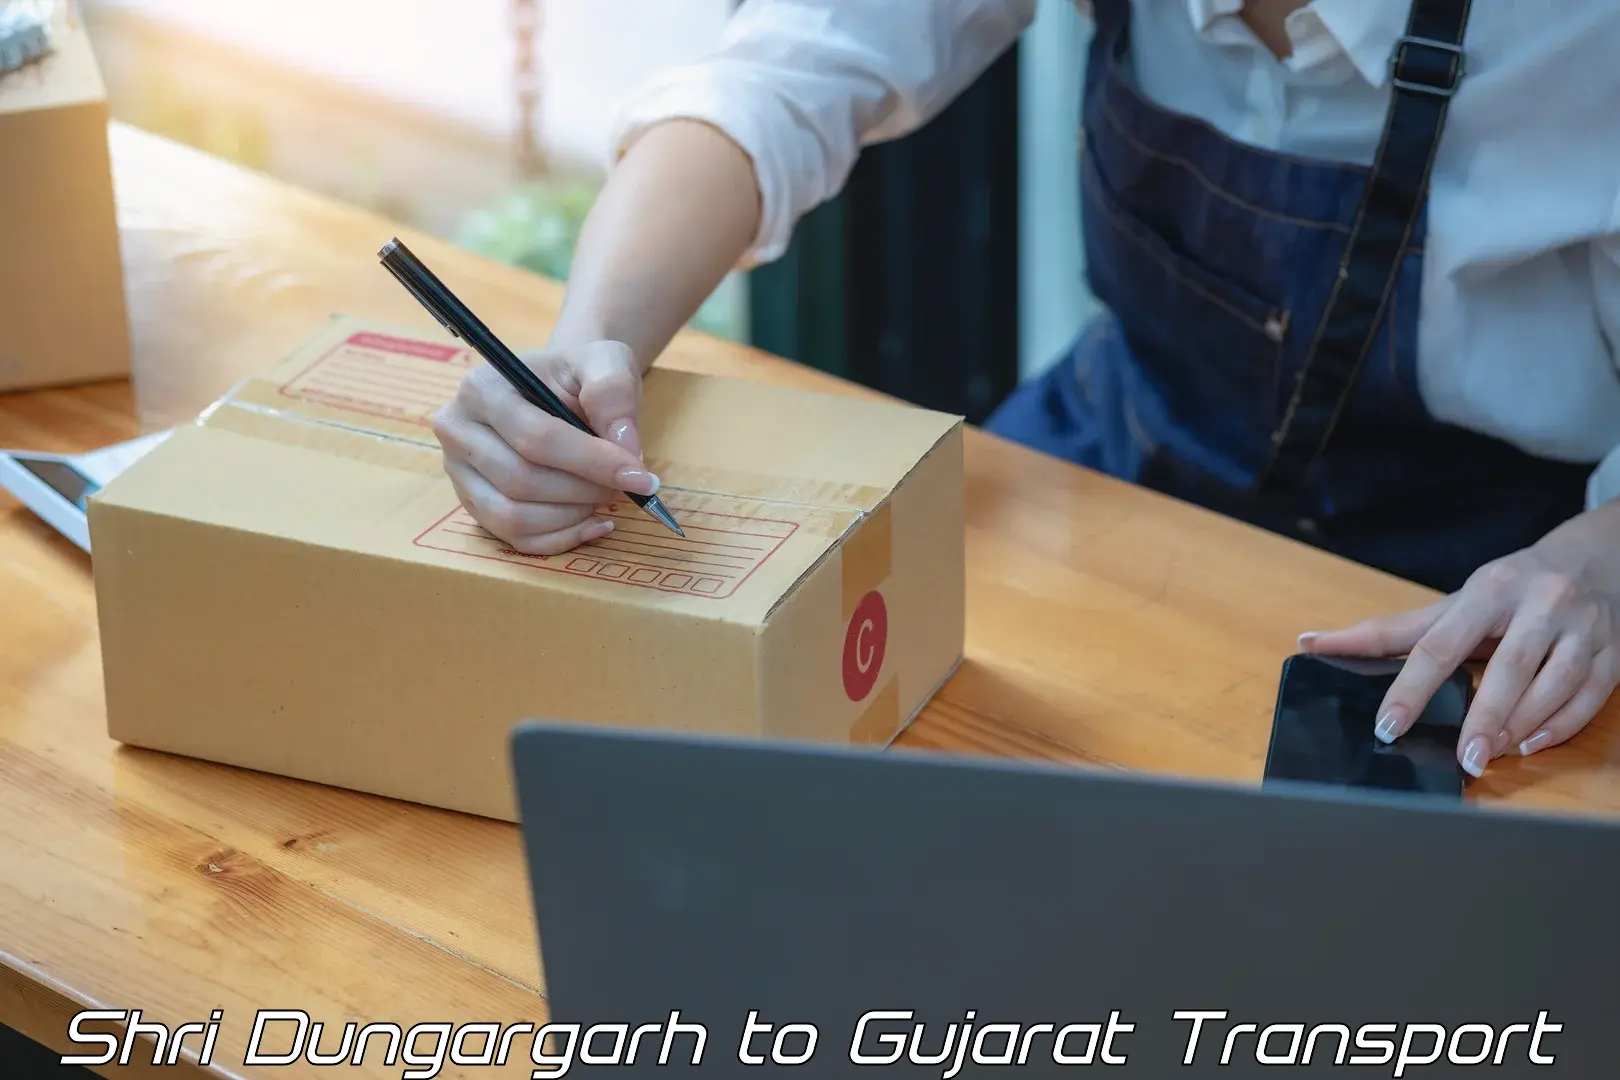 Shipping partner Shri Dungargarh to Gandhinagar